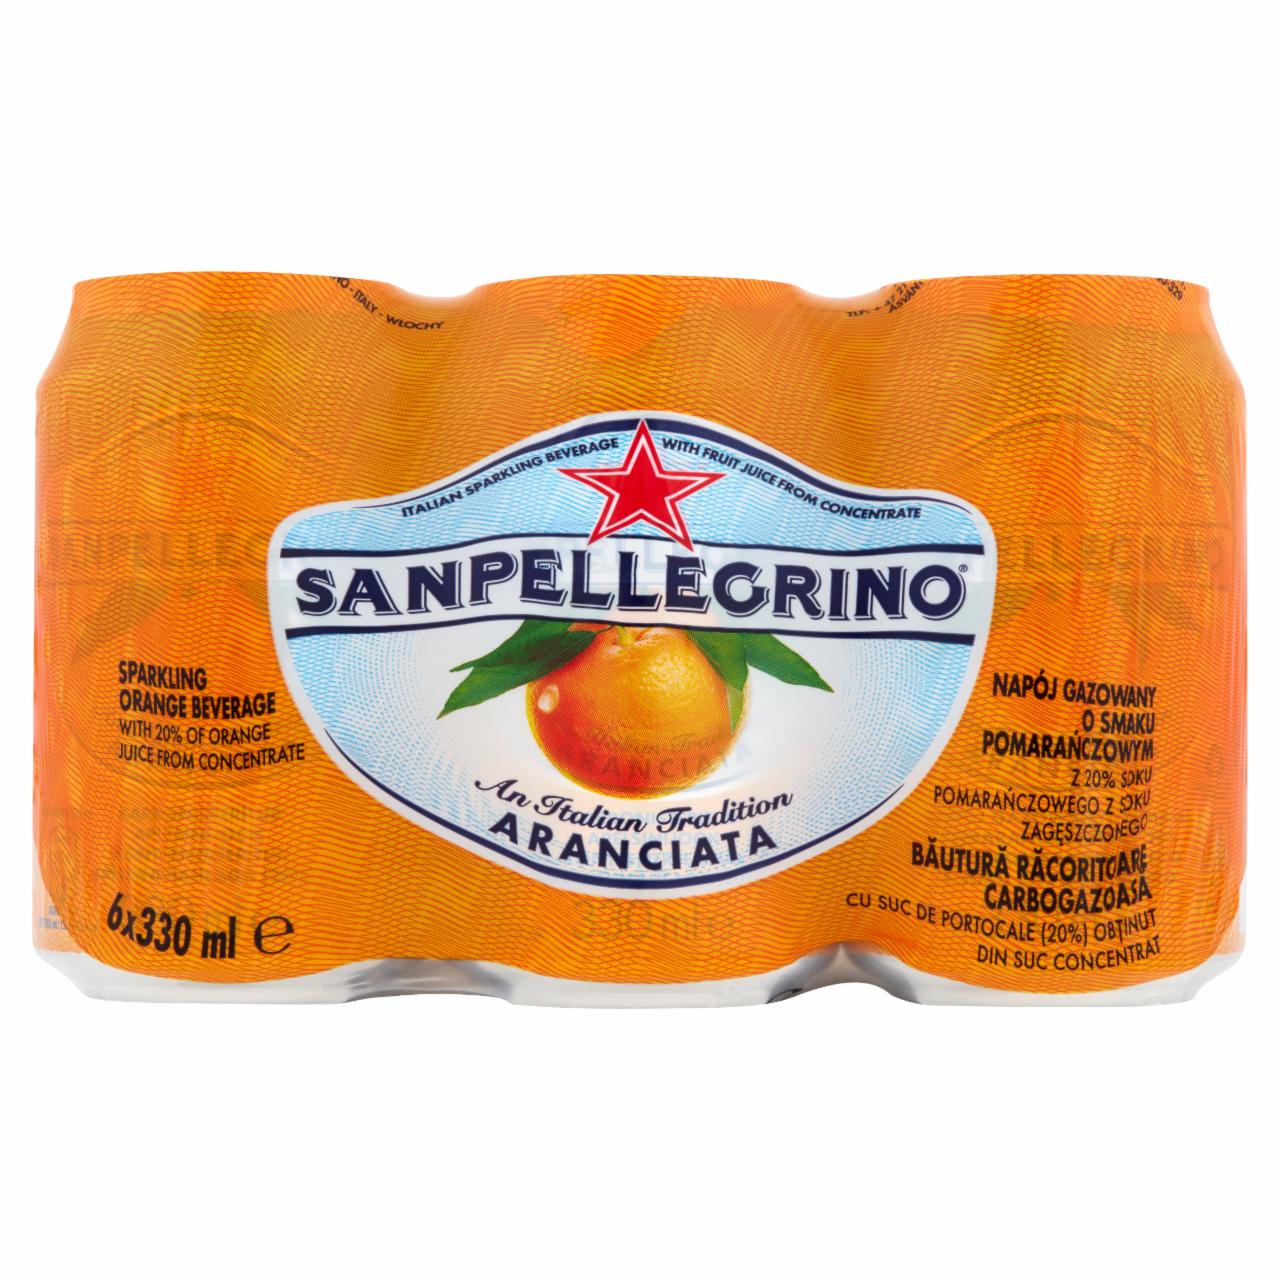 Zdjęcia - Sanpellegrino Aranciata Napój gazowany o smaku pomarańczowym 6 x 330 ml